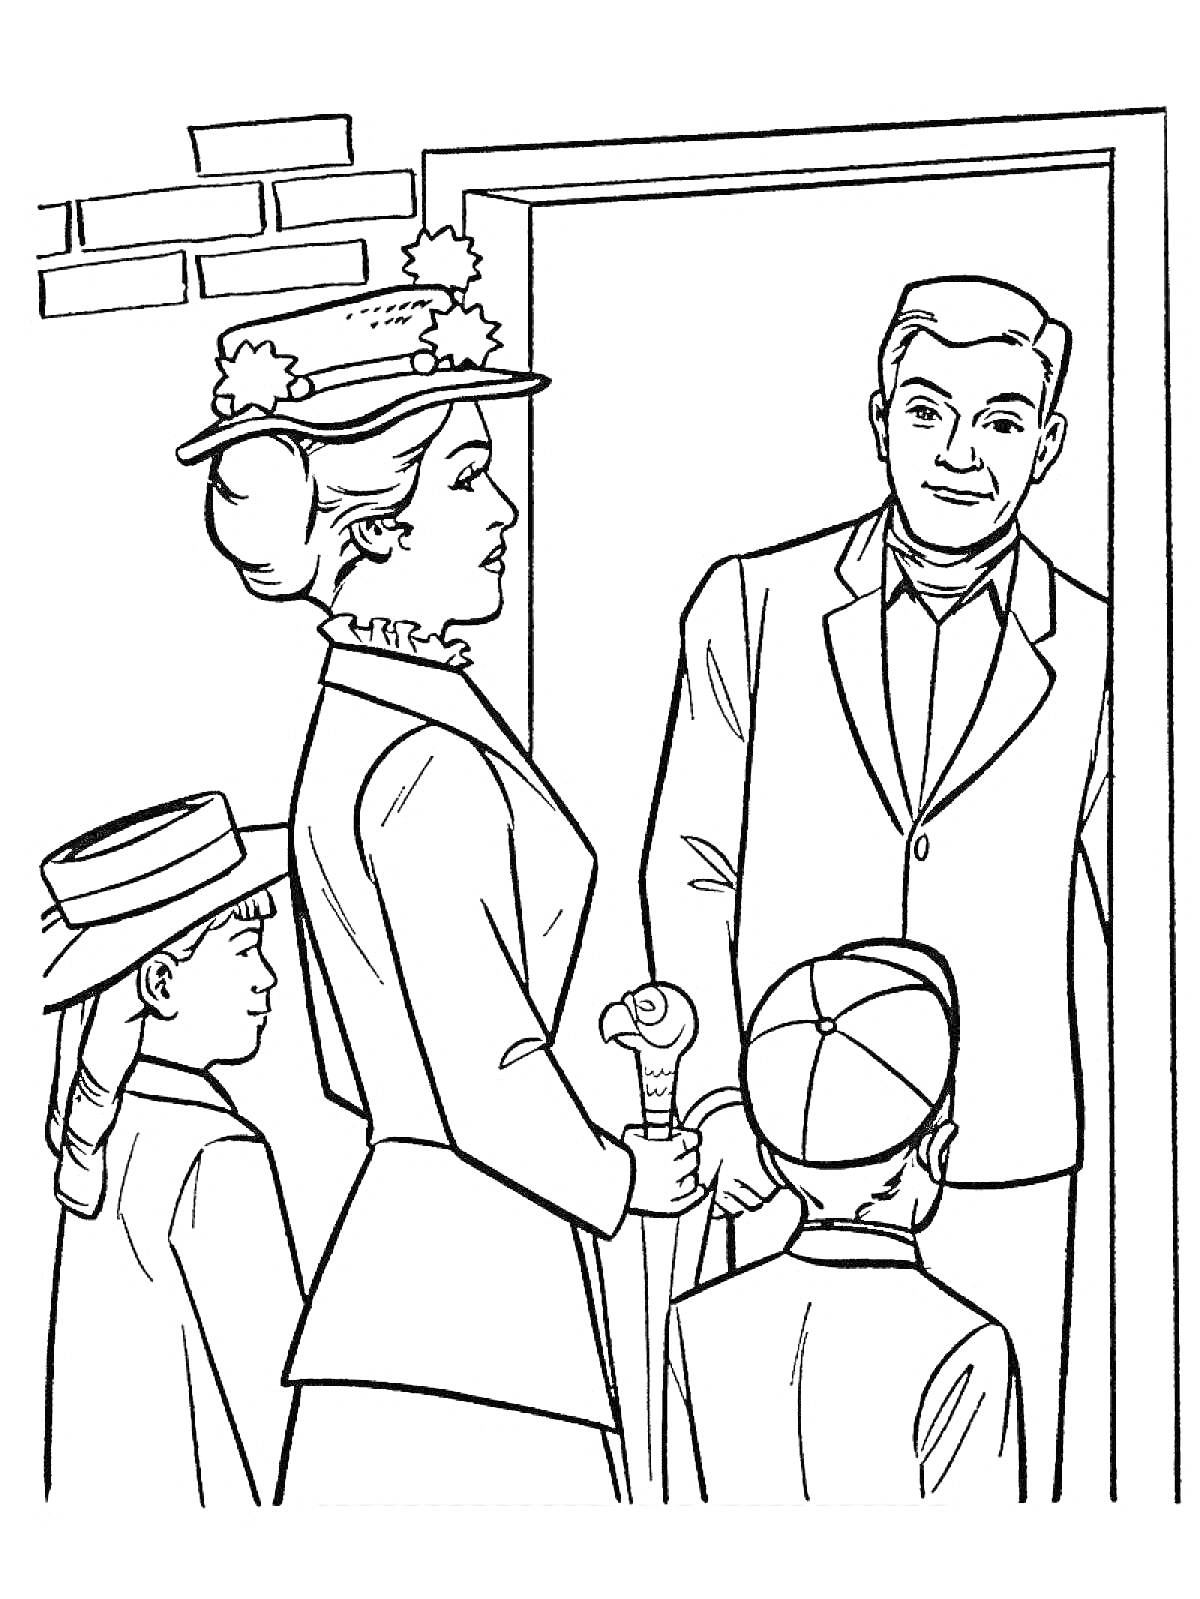 Раскраска Мэри Поппинс с зонтиком встречает взрослого мужчину у двери, рядом стоят два ребёнка